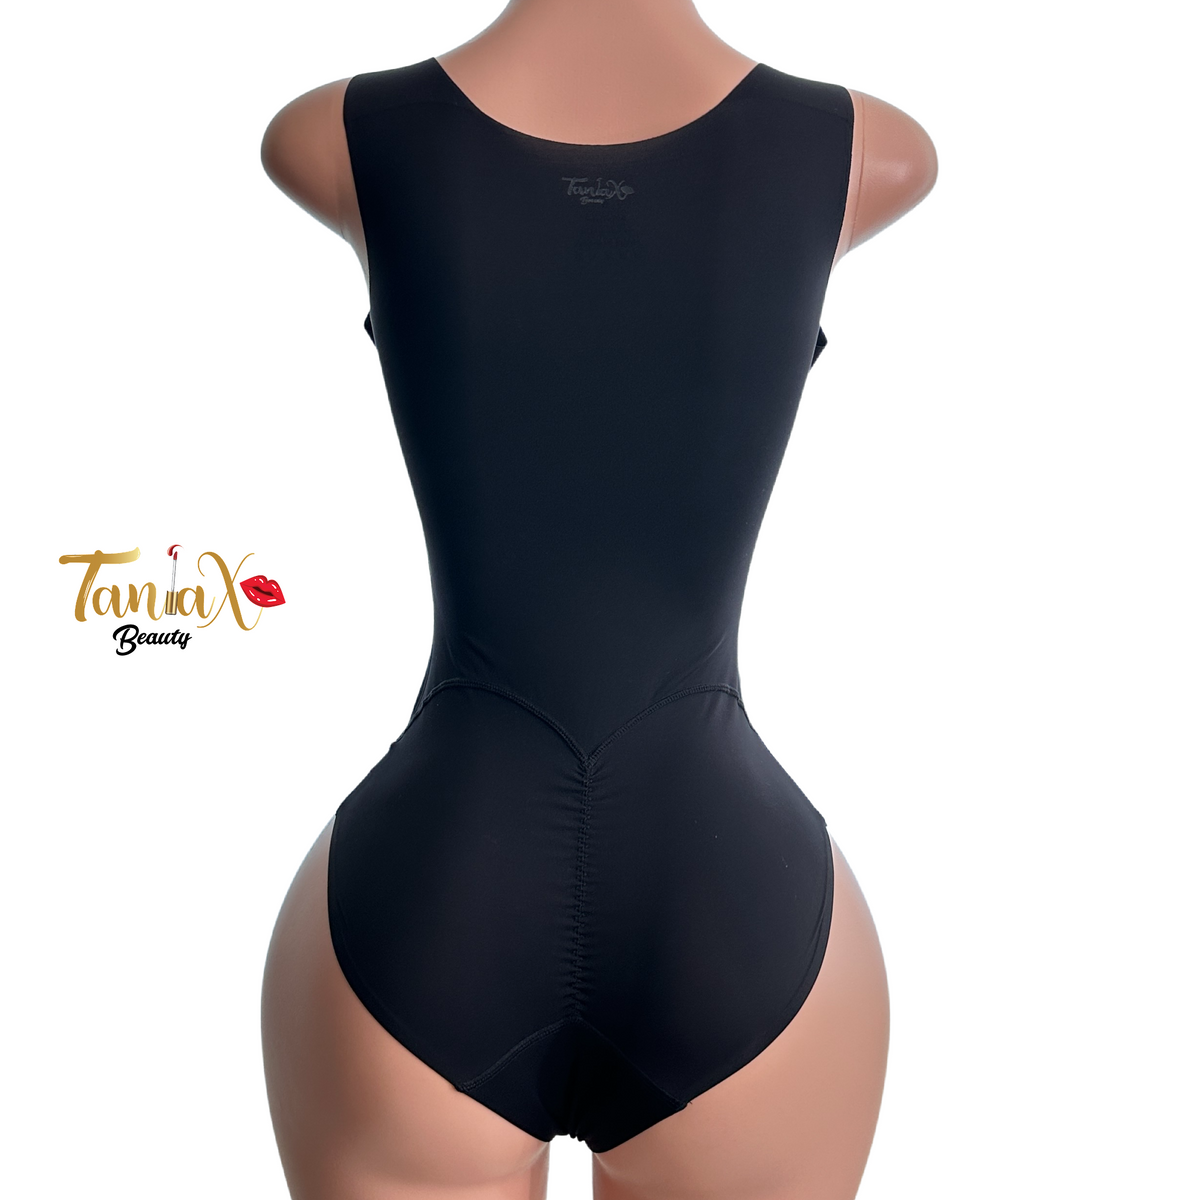 Protokolo 20149 Tania Bodysuit Women Sportswear Workout Clothing